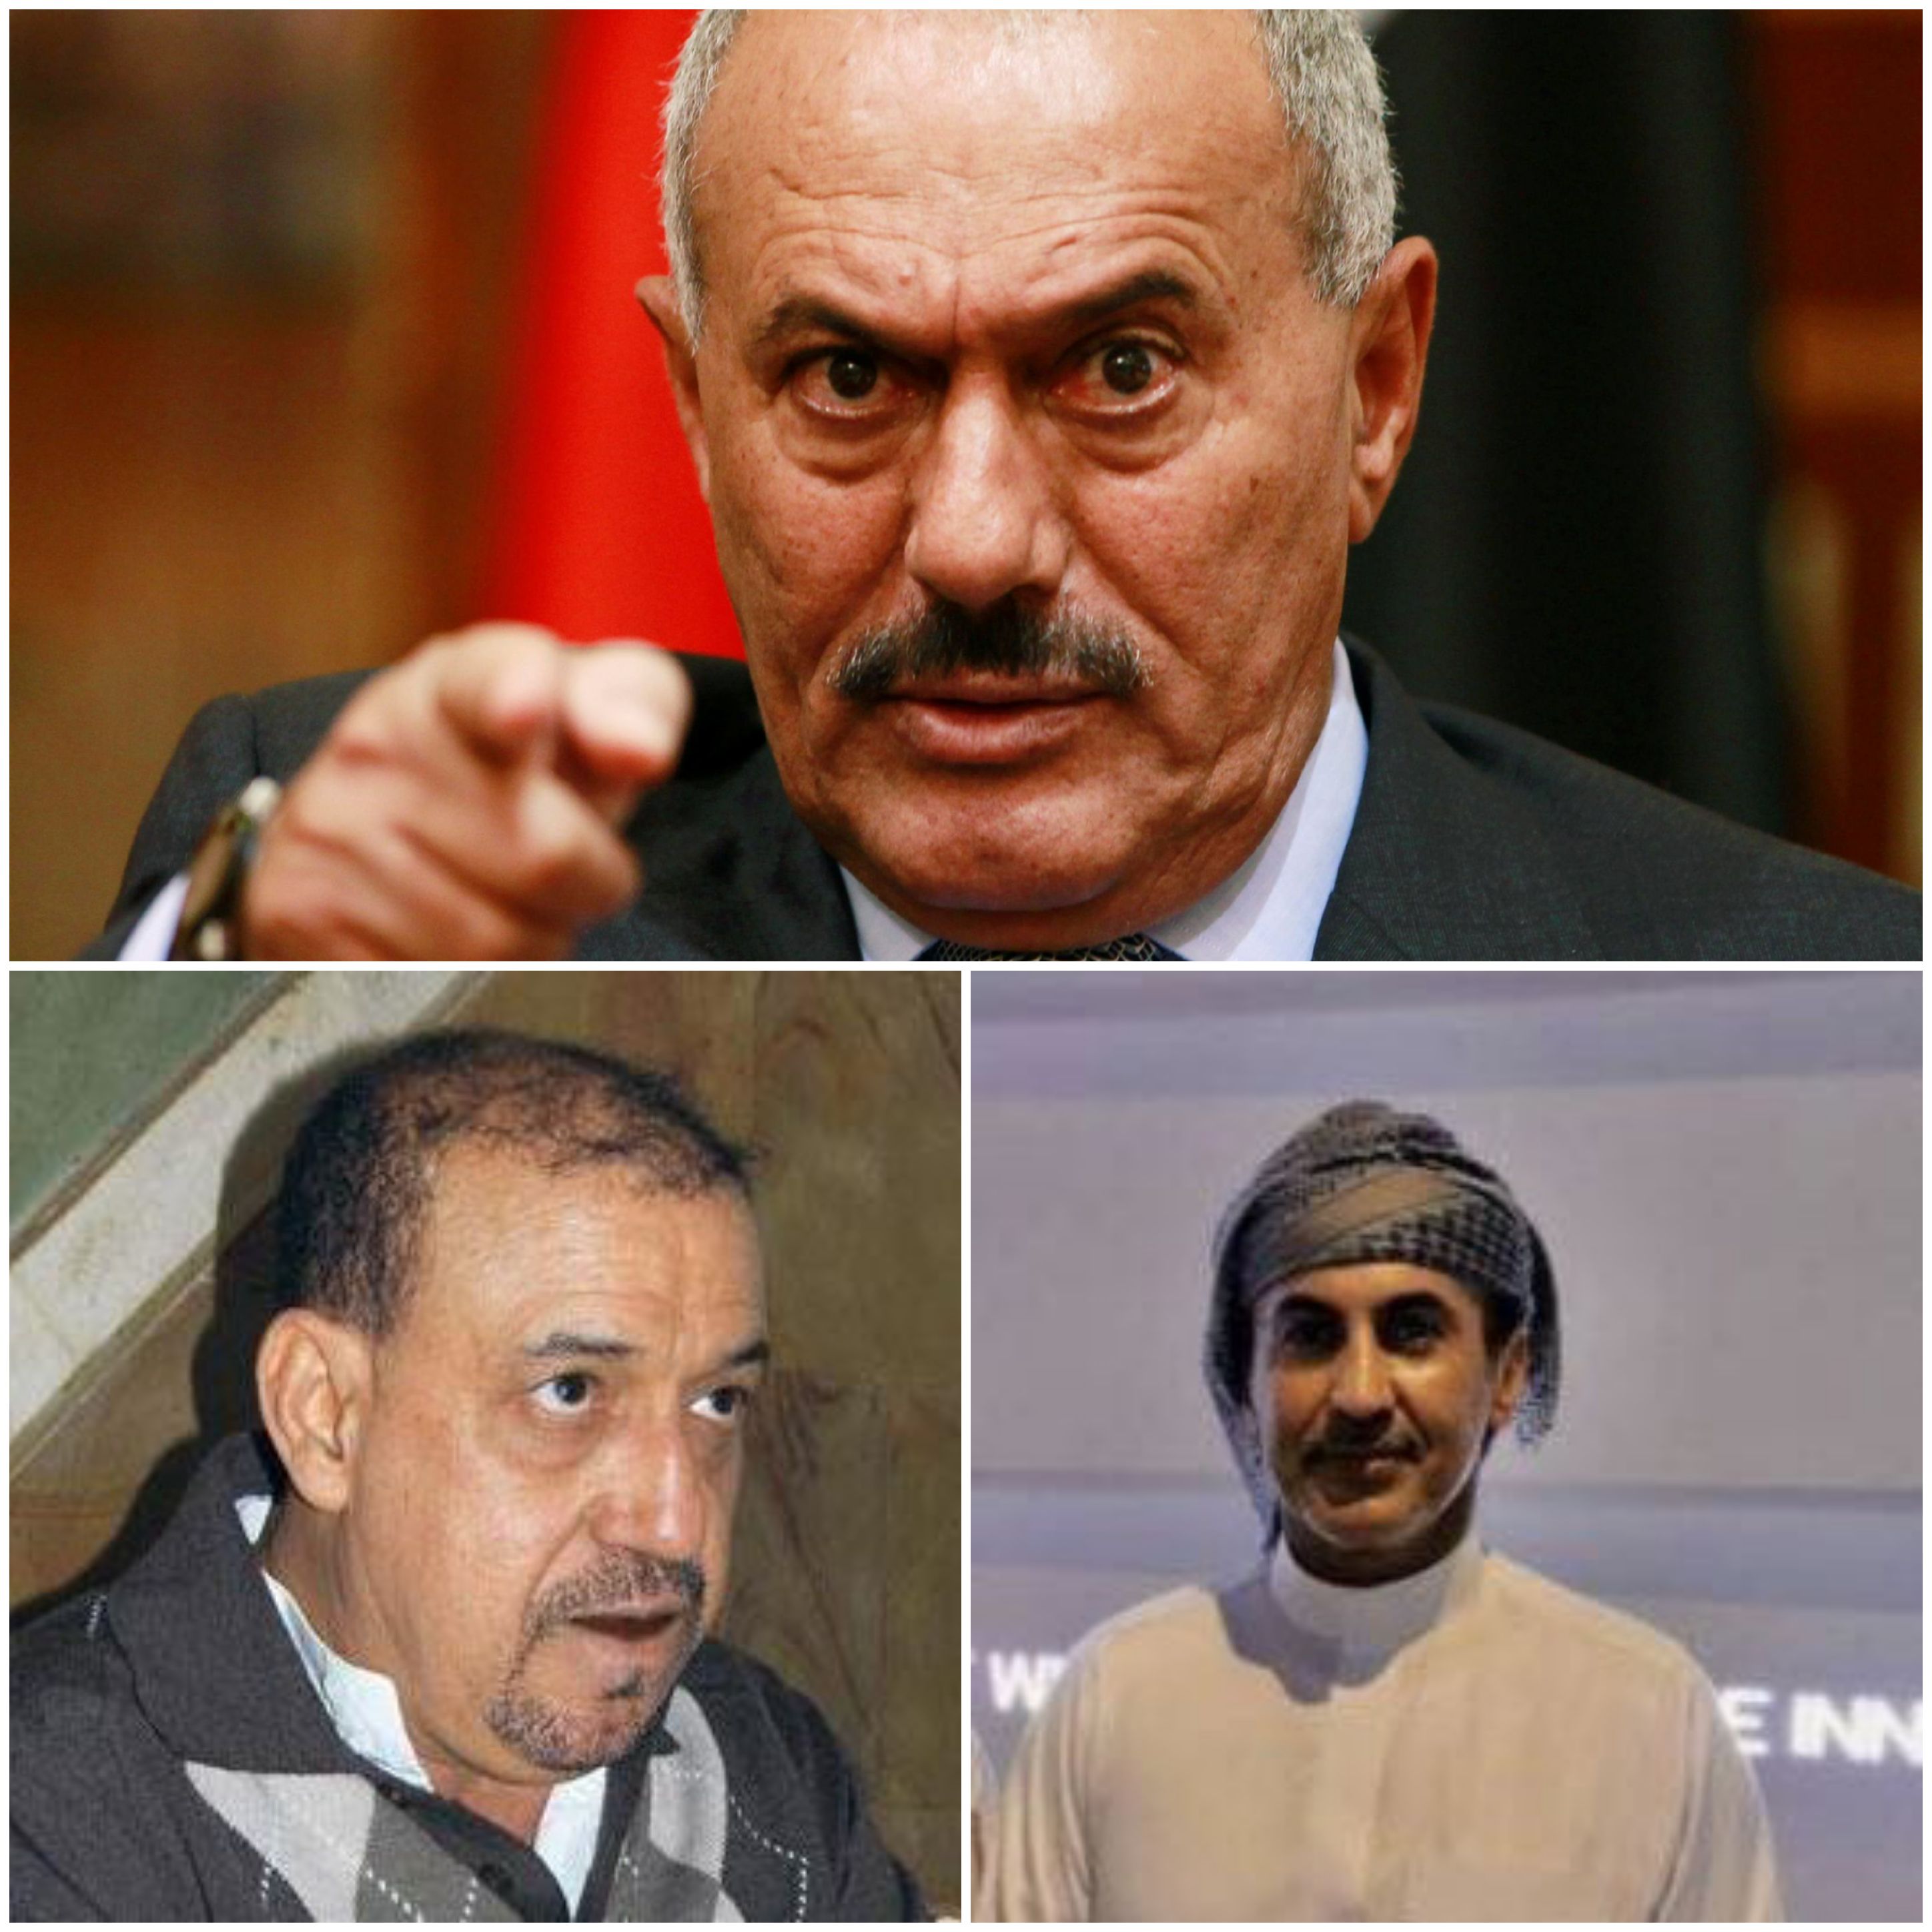 صادم جدا هذا هو القيادي المؤتمري الذي يقف وراء رفع العقوبات على الزعيم صالح والسفير أحمد علي